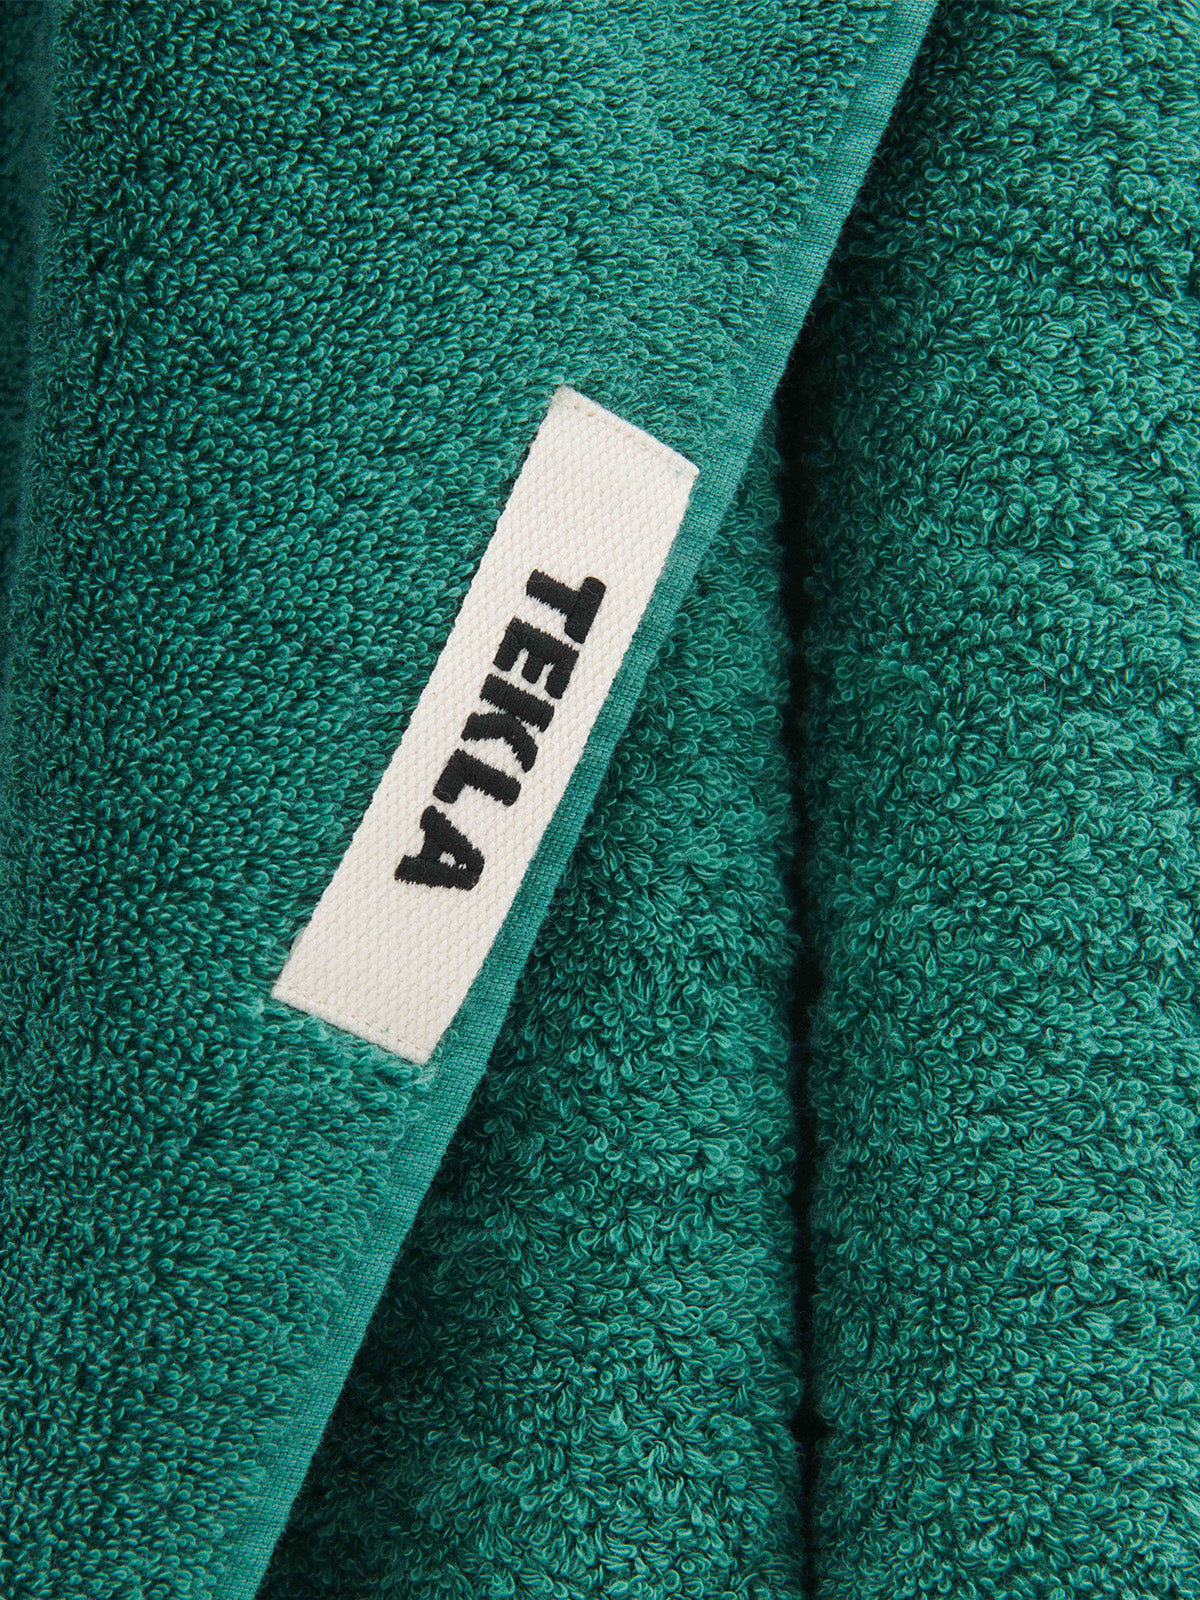 Gæstehåndklæde i Teal Green